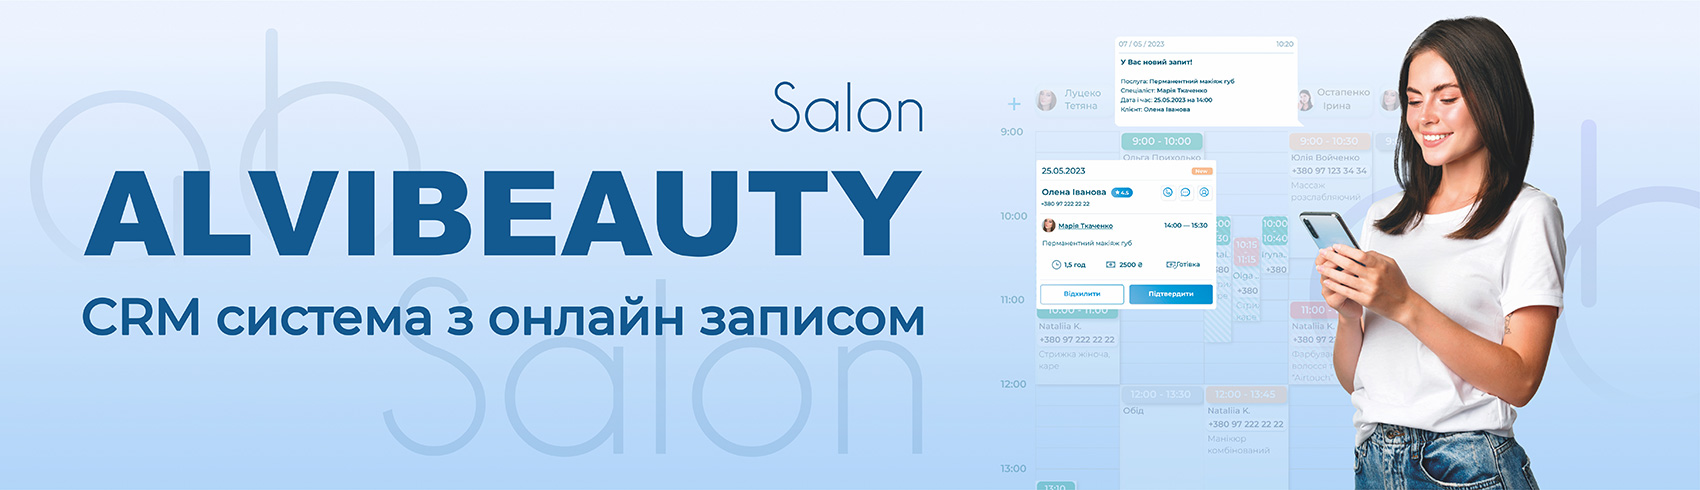 CRM система для салонов красоты и beauty-мастеров AlviBeauty Salon